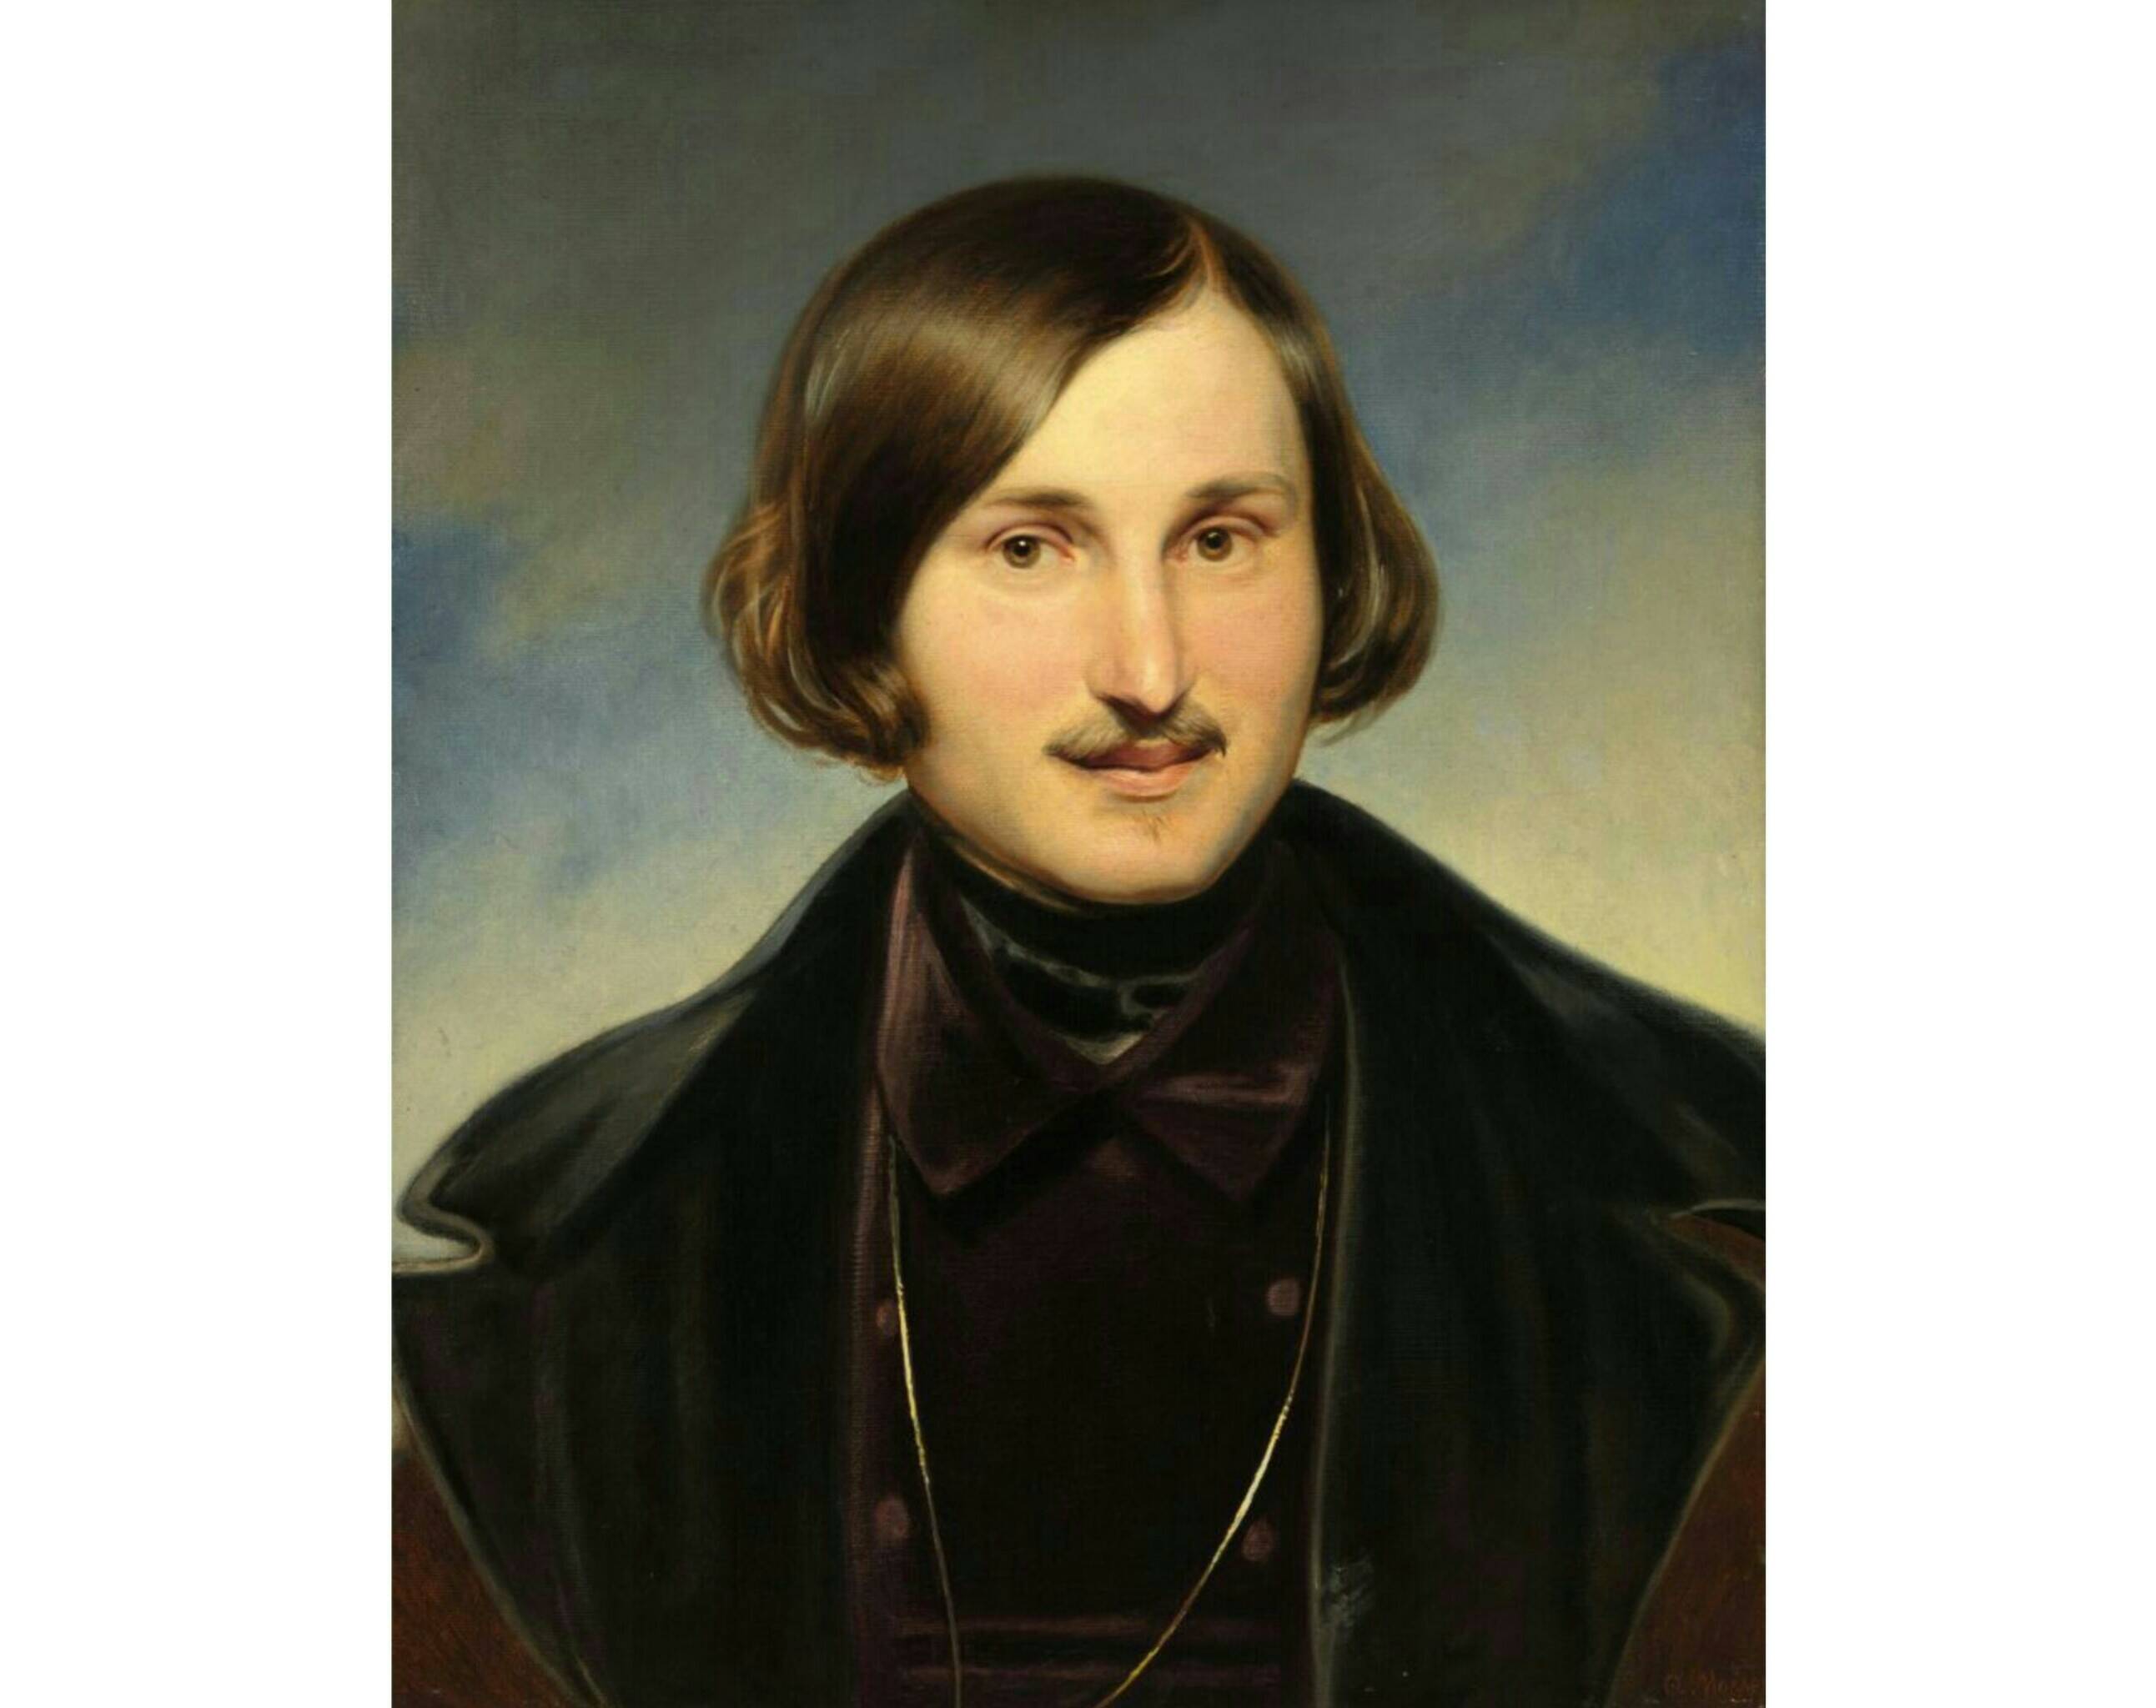 Ф.А. Моллер «Портрет Н.В. Гоголя», начало 1840-х. Из собрания Третьяковской галереи